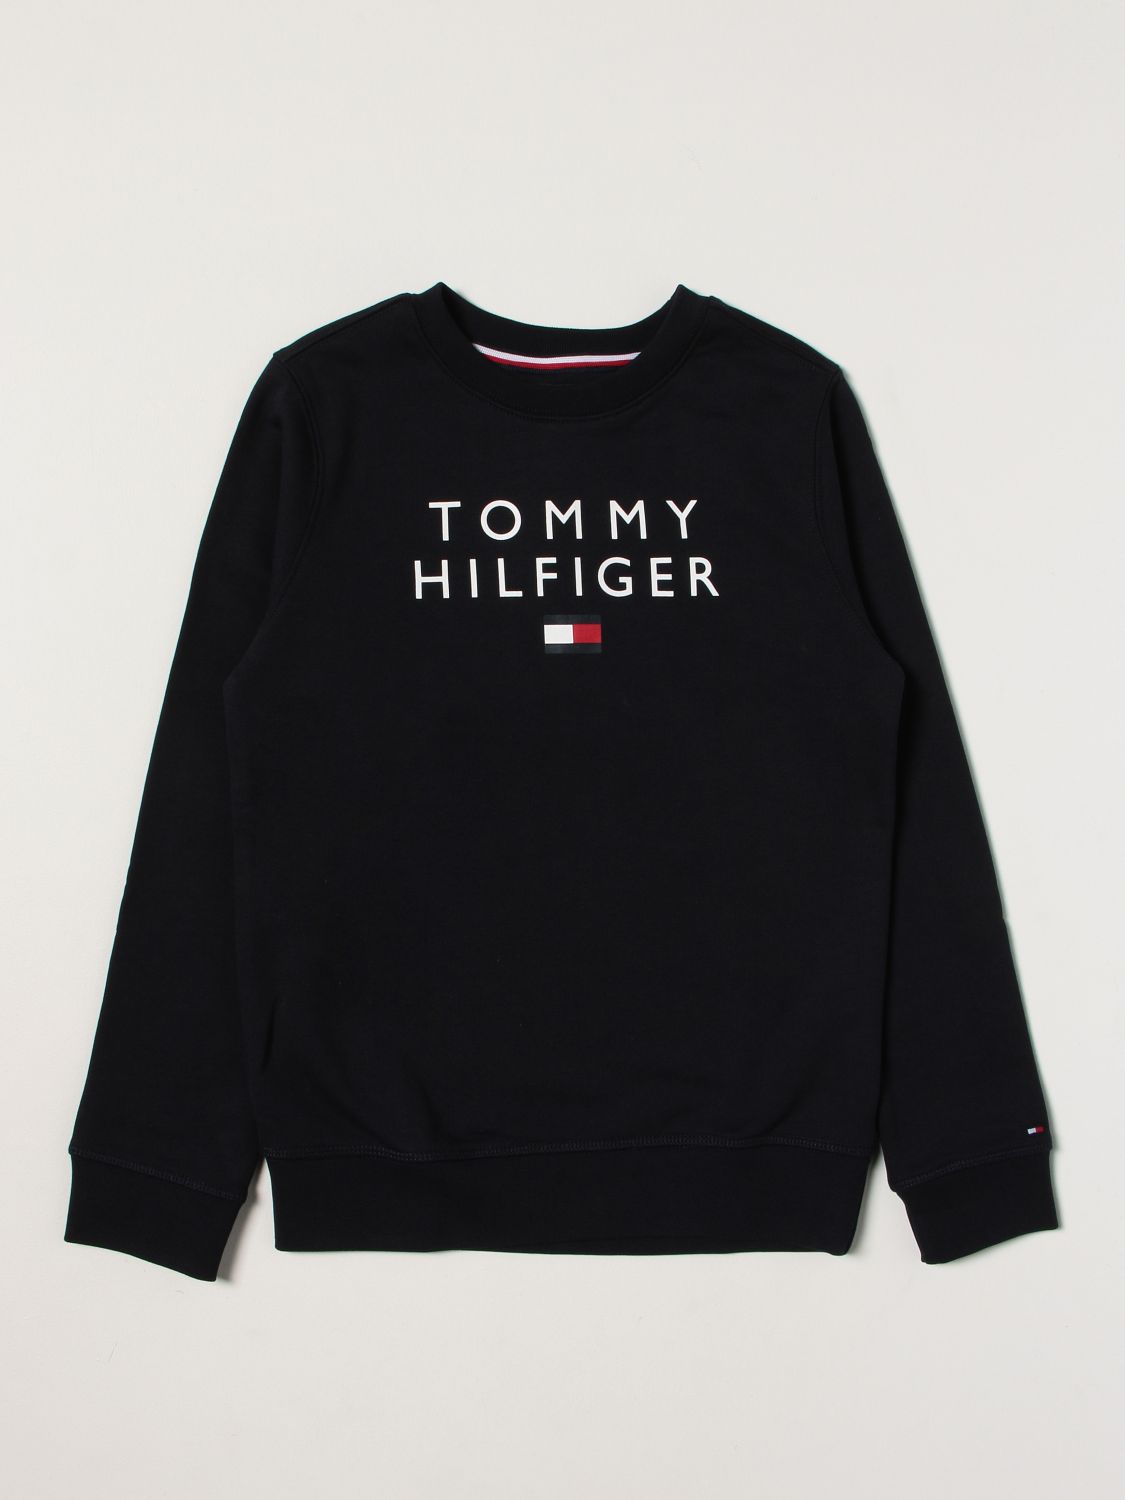 Tommy Hilfiger Dumpers | ModeSens